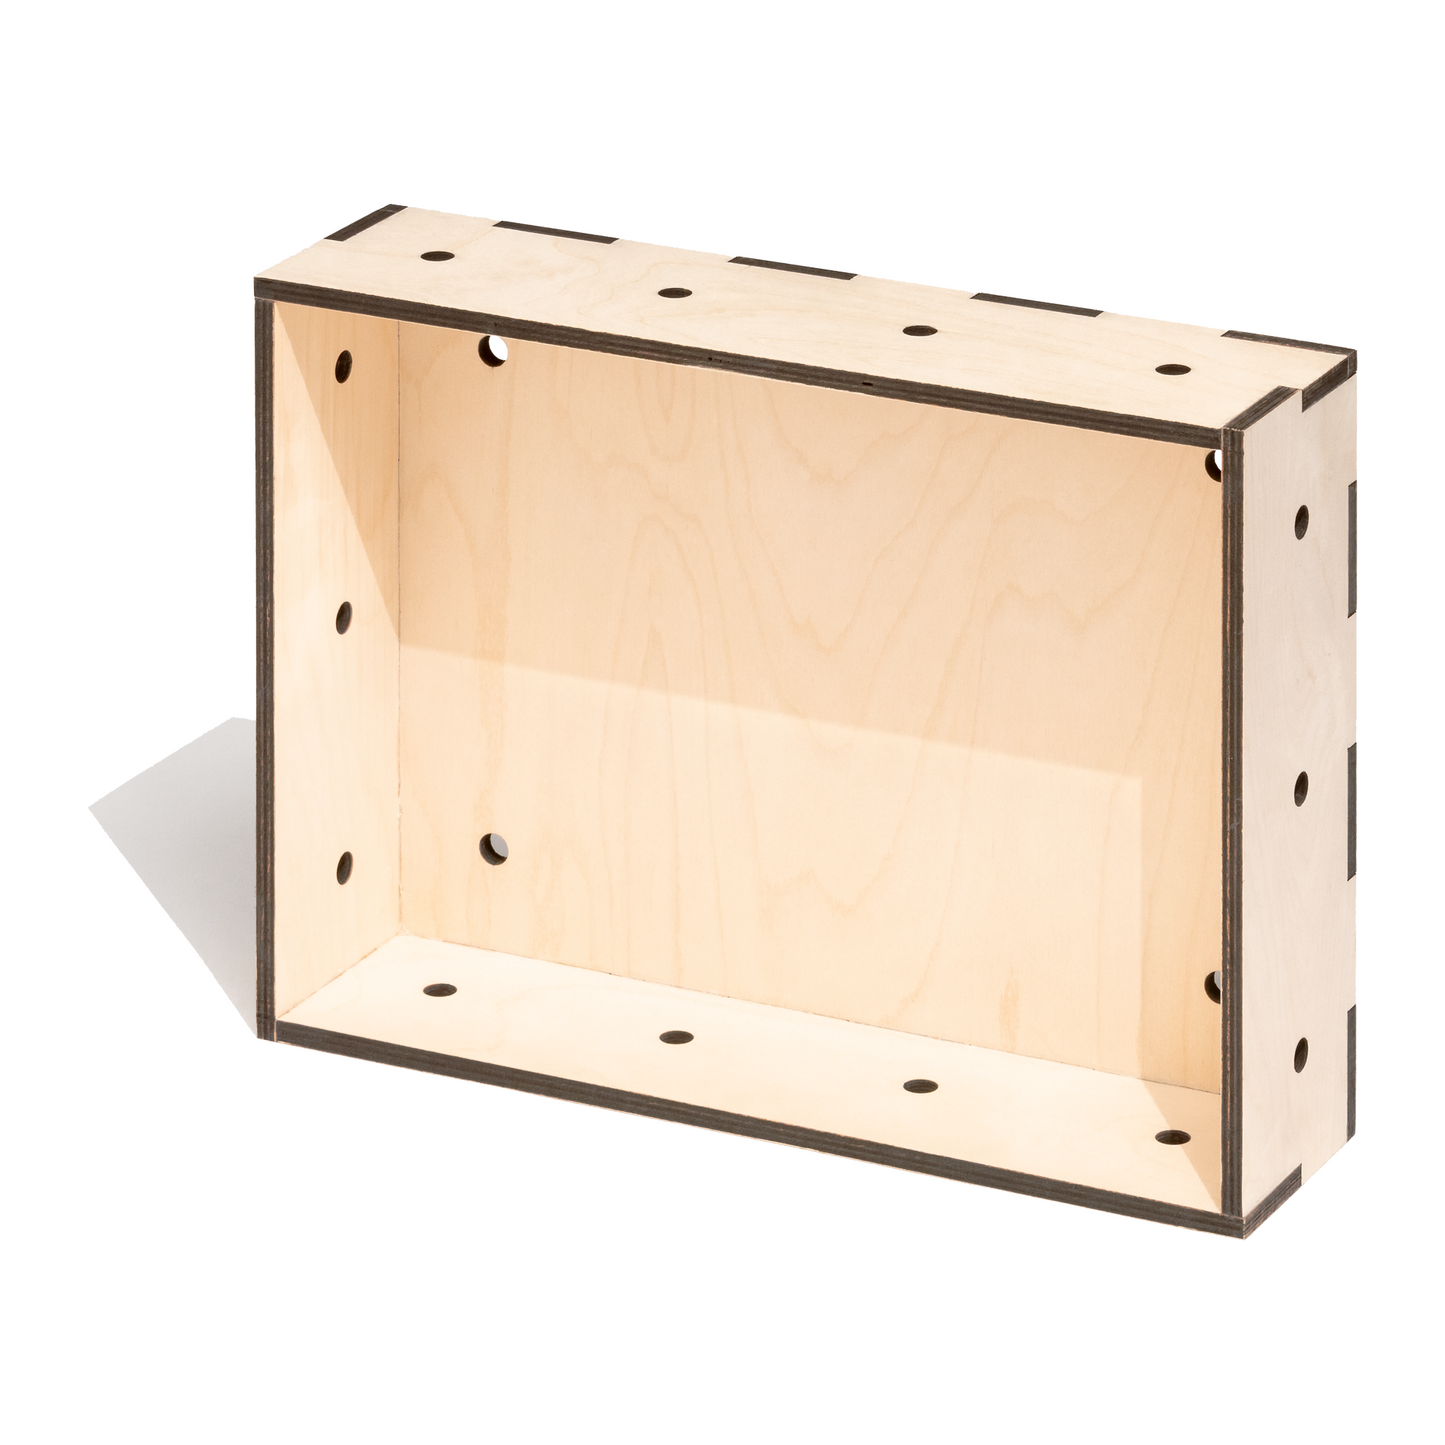 Kiste aus gelasertem Holz im Euroboxformat 40 x 30 x 10 cm für Regalsysteme